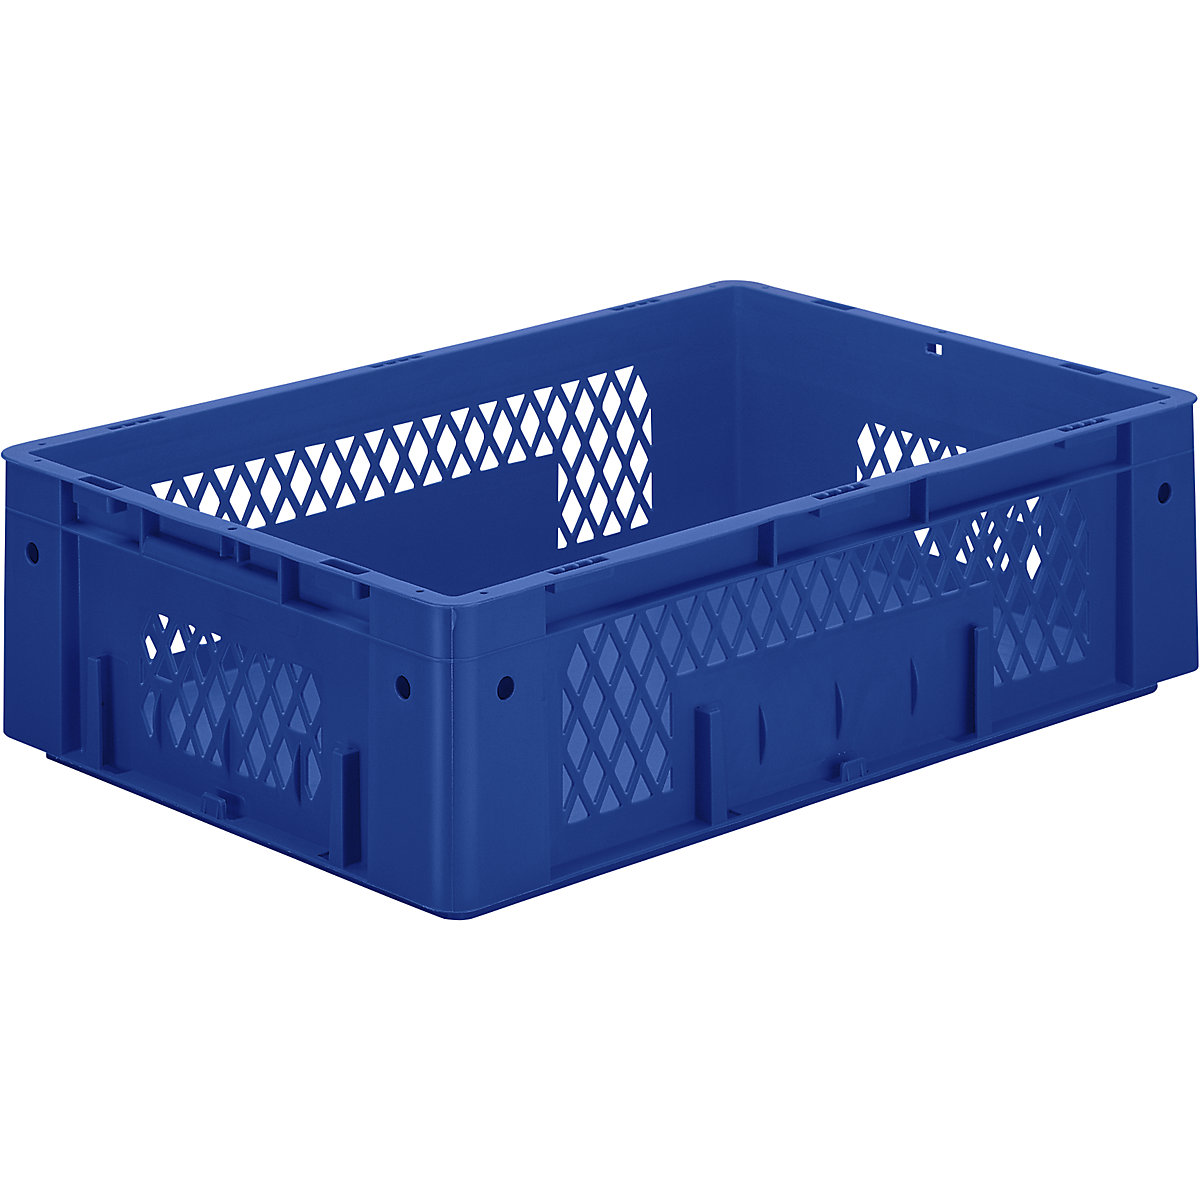 Schwerlast-Euro-Behälter, Polypropylen, Volumen 31 l, LxBxH 600 x 400 x 175 mm, Wände durchbrochen, Boden geschlossen, blau, VE 2 Stk-4